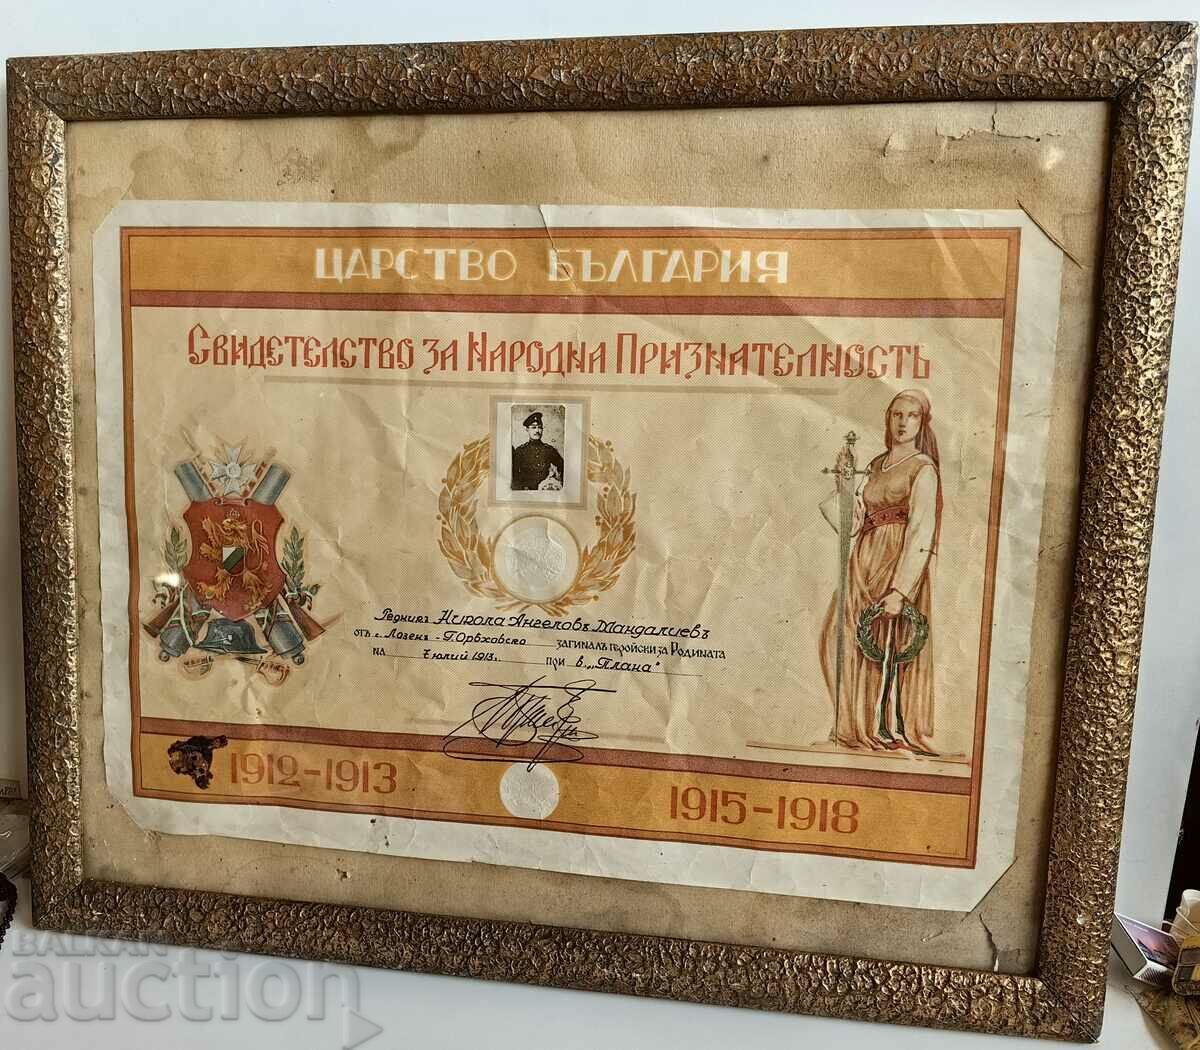 CERTIFICAT DE APRECIE PUBLICĂ UCIȚĂ PLANA 1913 RĂZBOI